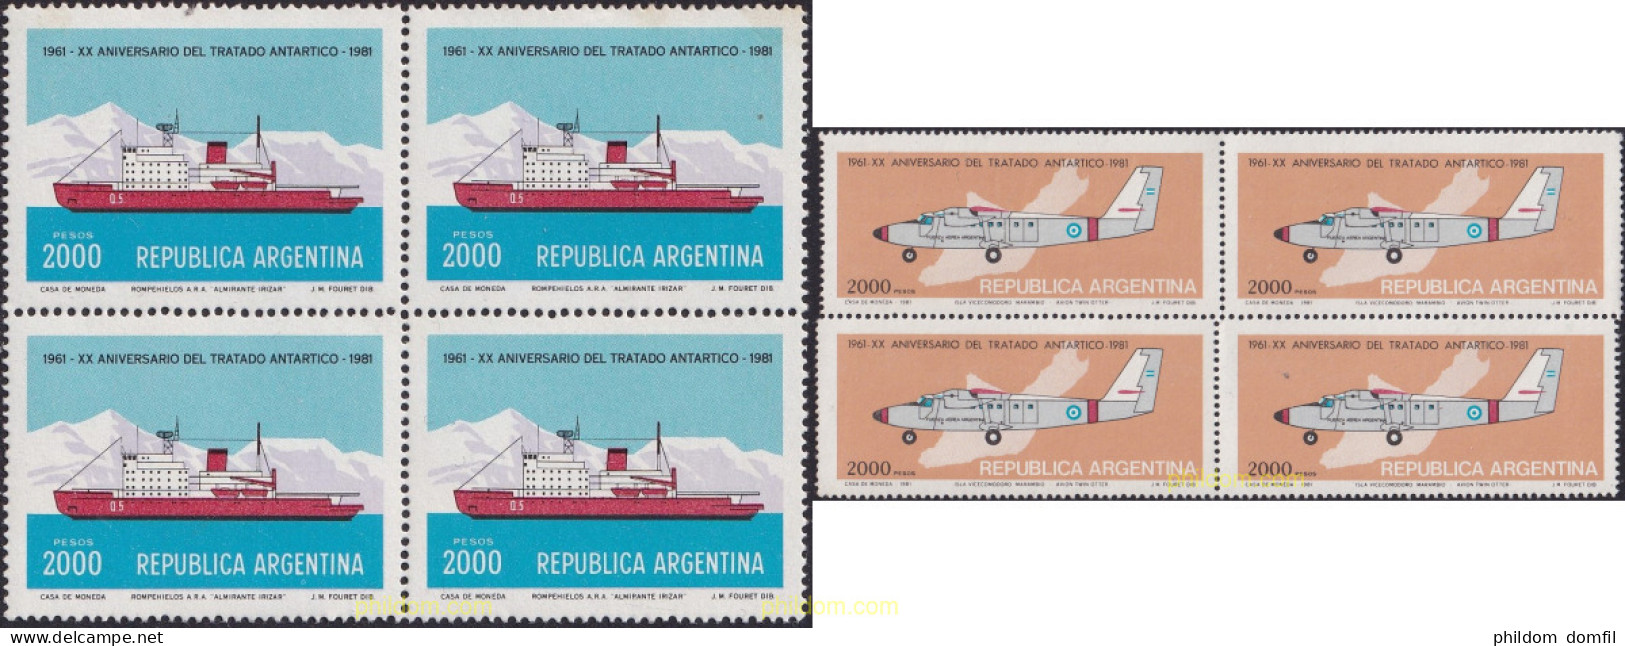 729254 MNH ARGENTINA 1981 20 ANIVERSARIO DEL TRATADO ANTARTICO - Unused Stamps